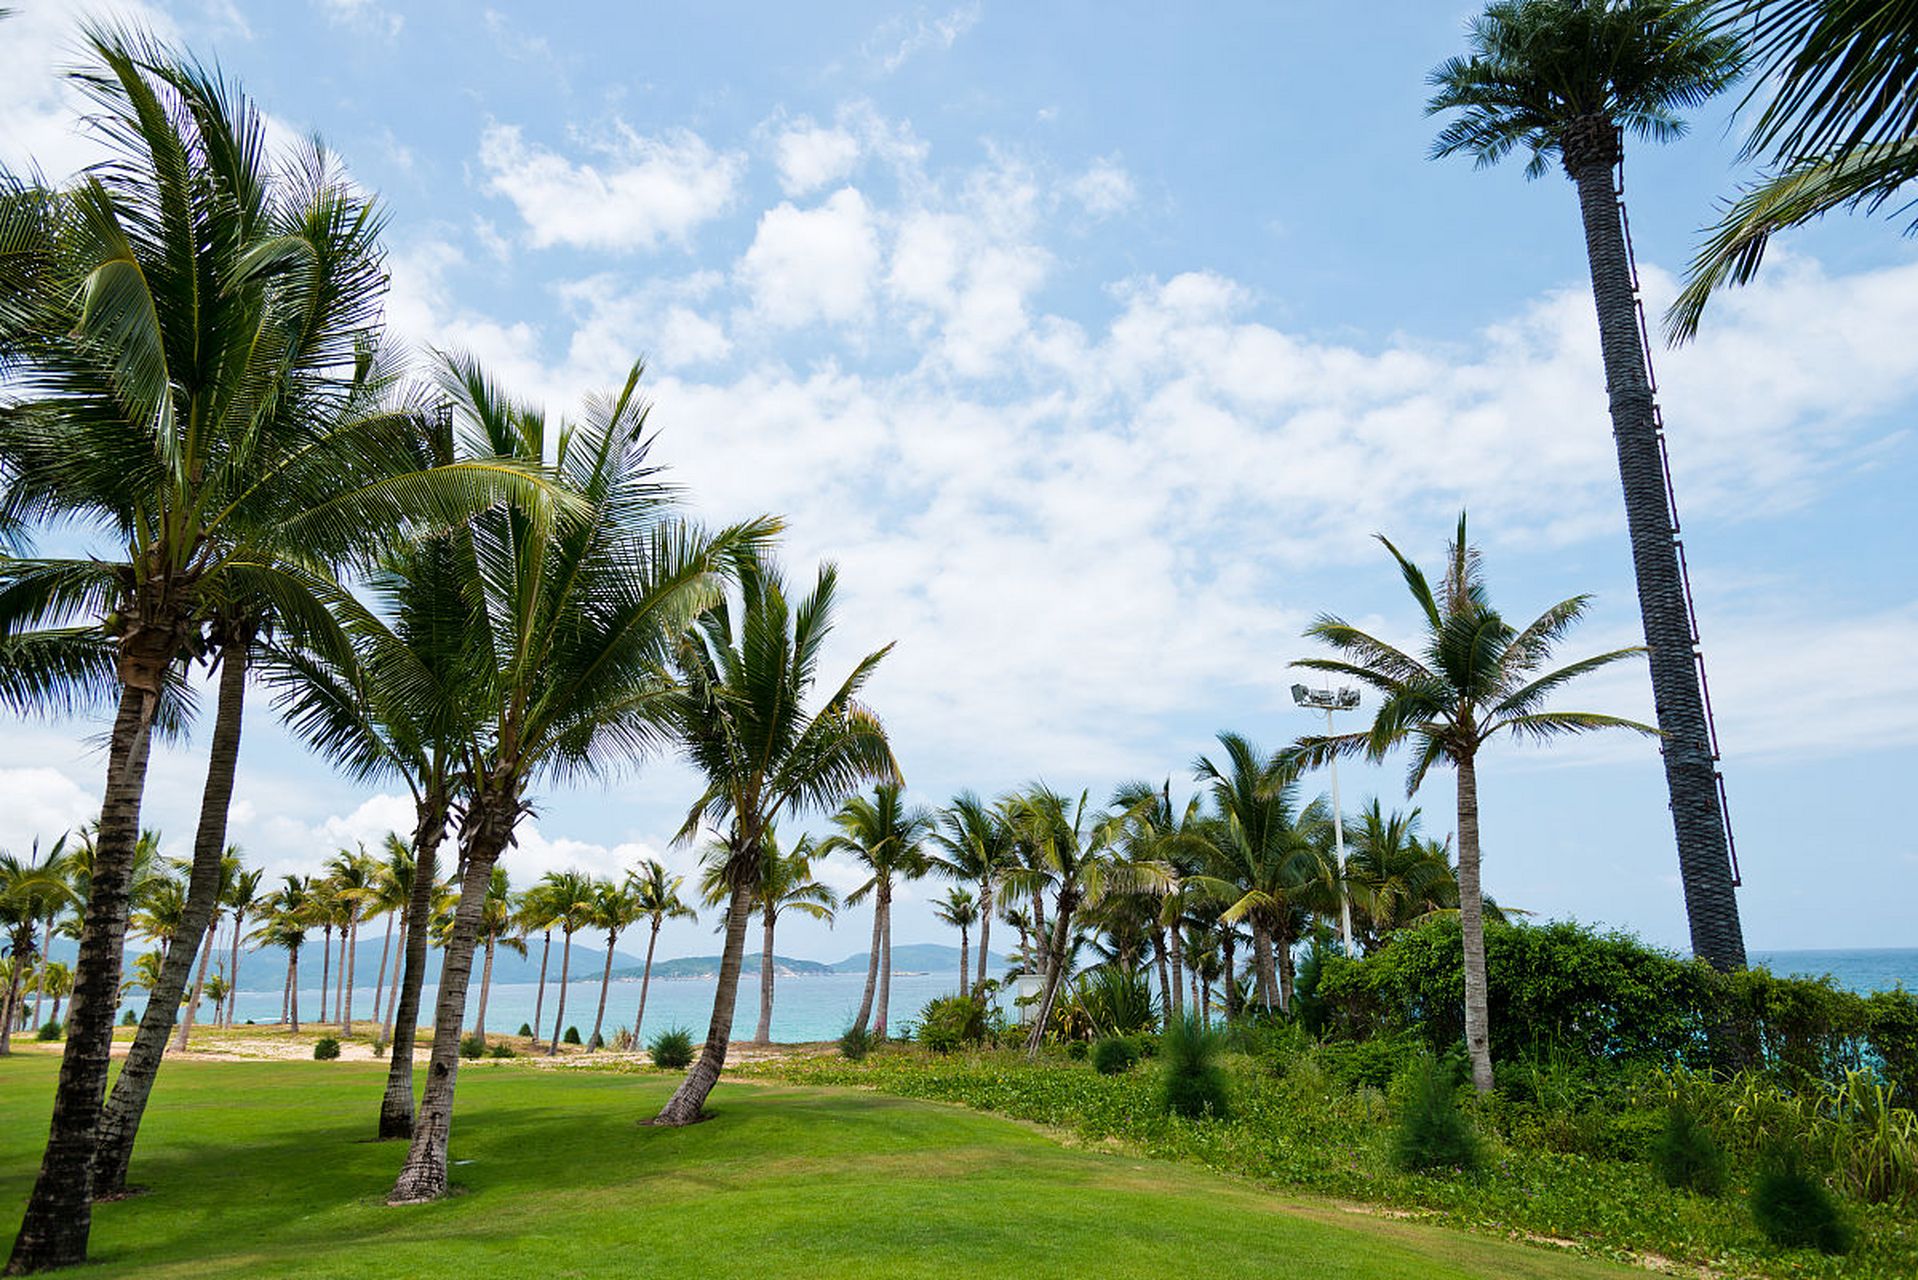 海南文昌东郊椰林风景区,在绵延十里的建华山海岸线上,葱翠的椰林